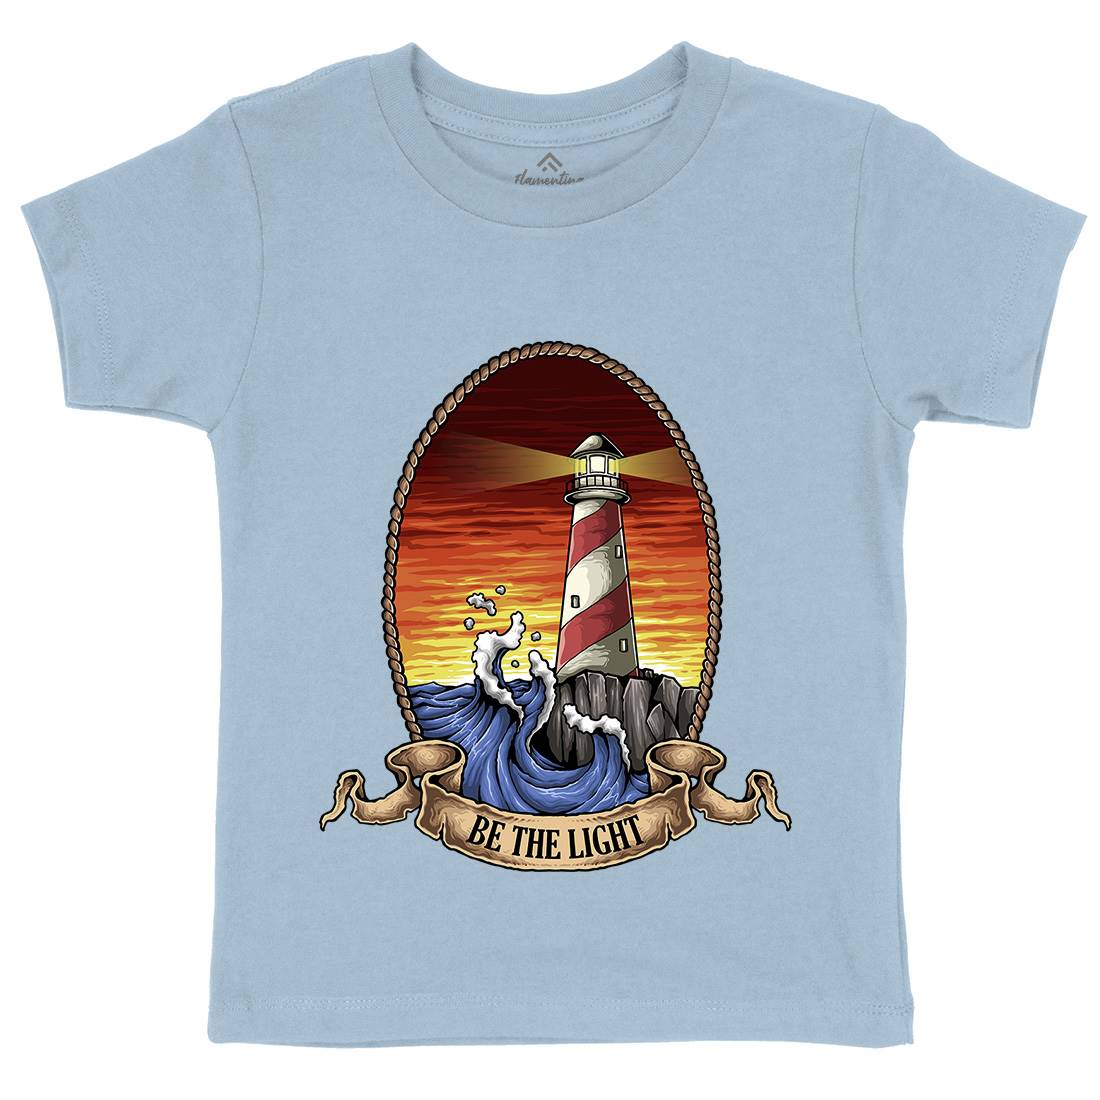 Lighthouse Kids Organic Crew Neck T-Shirt Navy A433